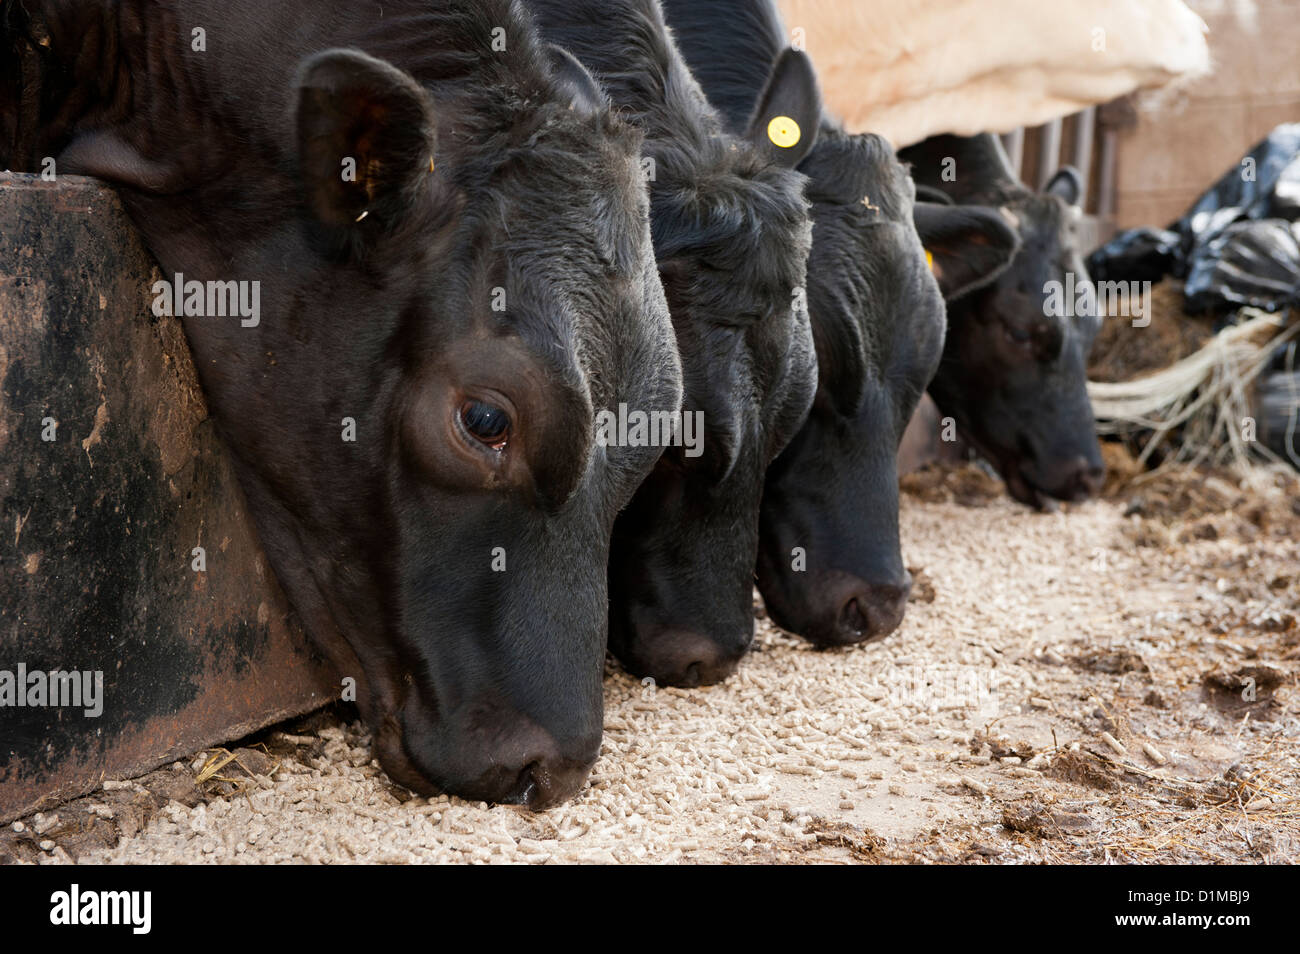 Mutterkuhhaltung Viehfutter Essen Konzentrat durch feed-Schranke. Stockfoto